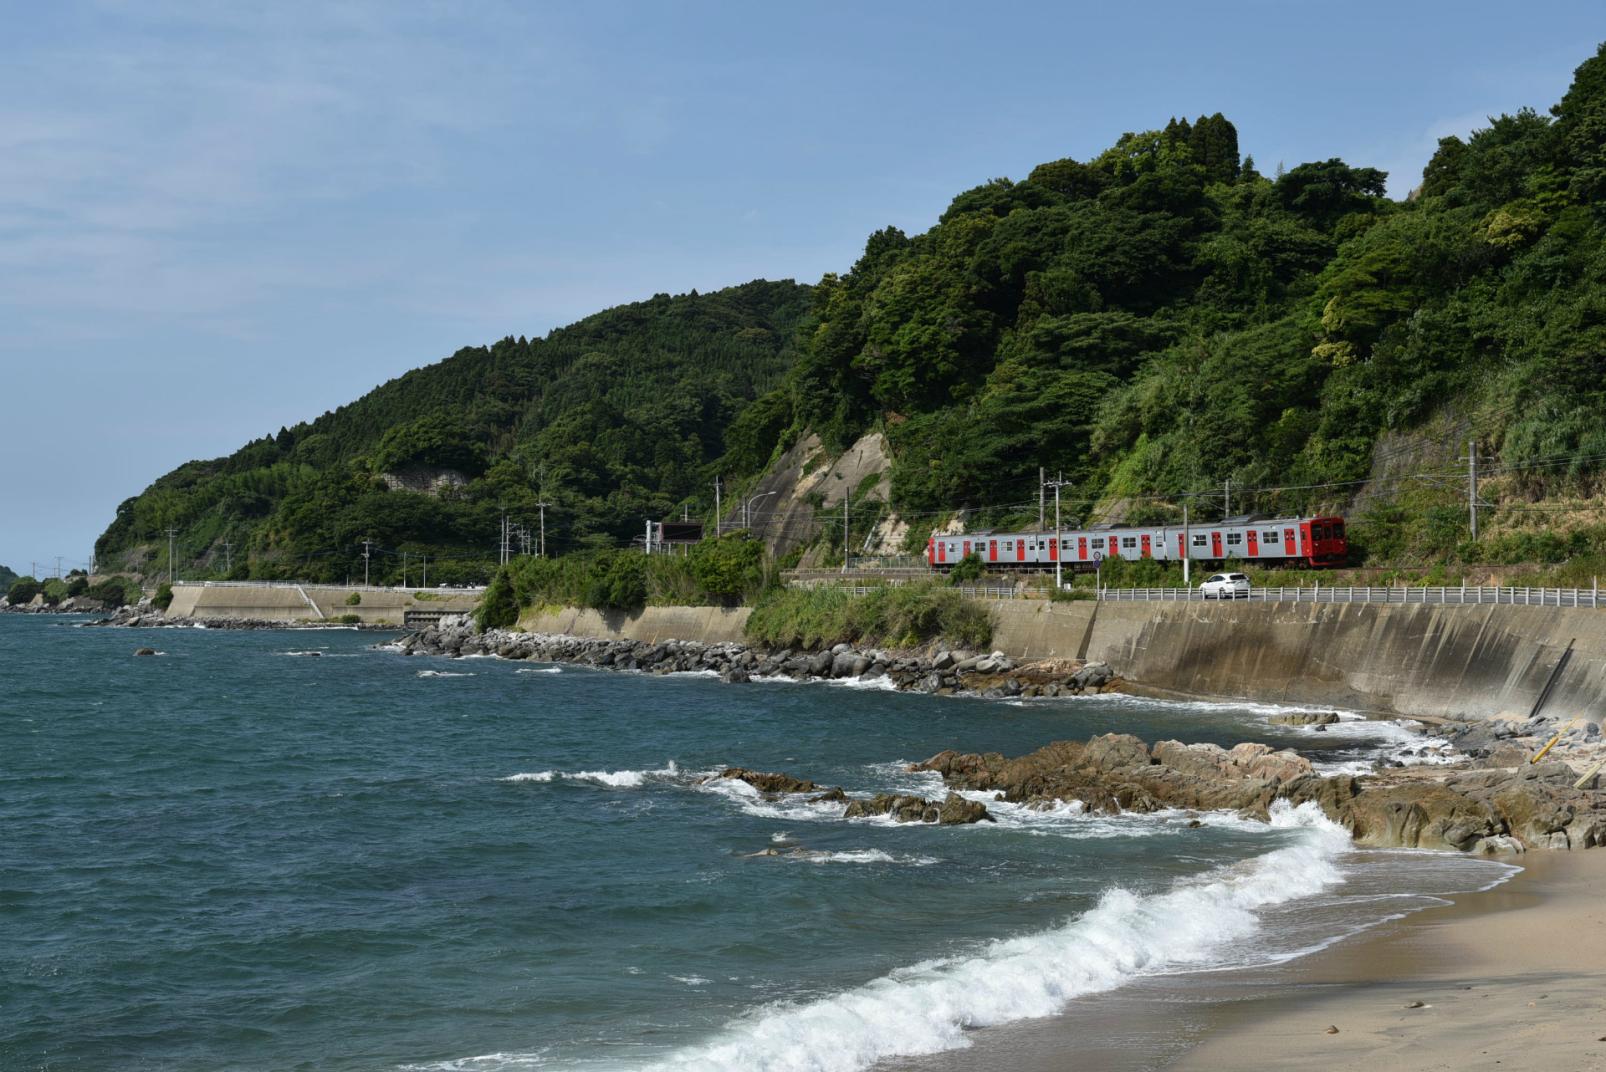 Sea and Train Scenery